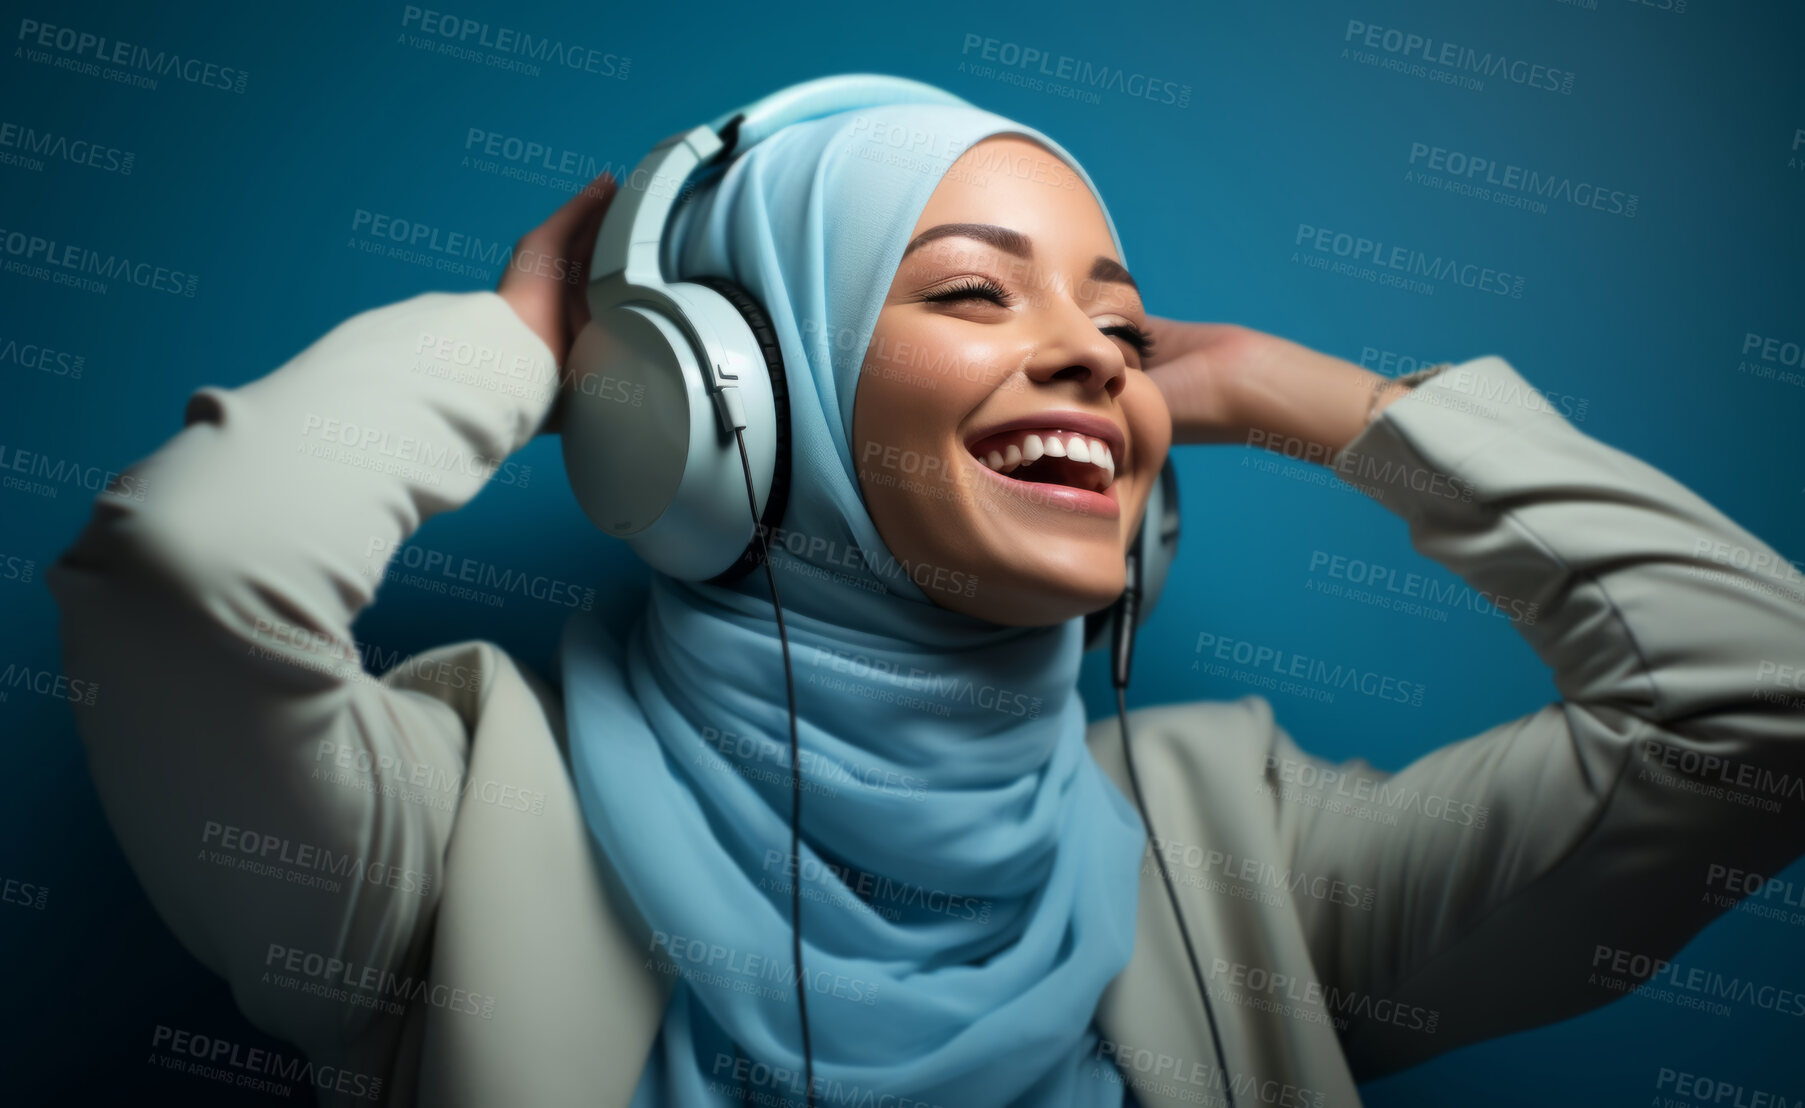 Buy stock photo Happy muslim girl wearing headphones in studio portrait. Religion concept.